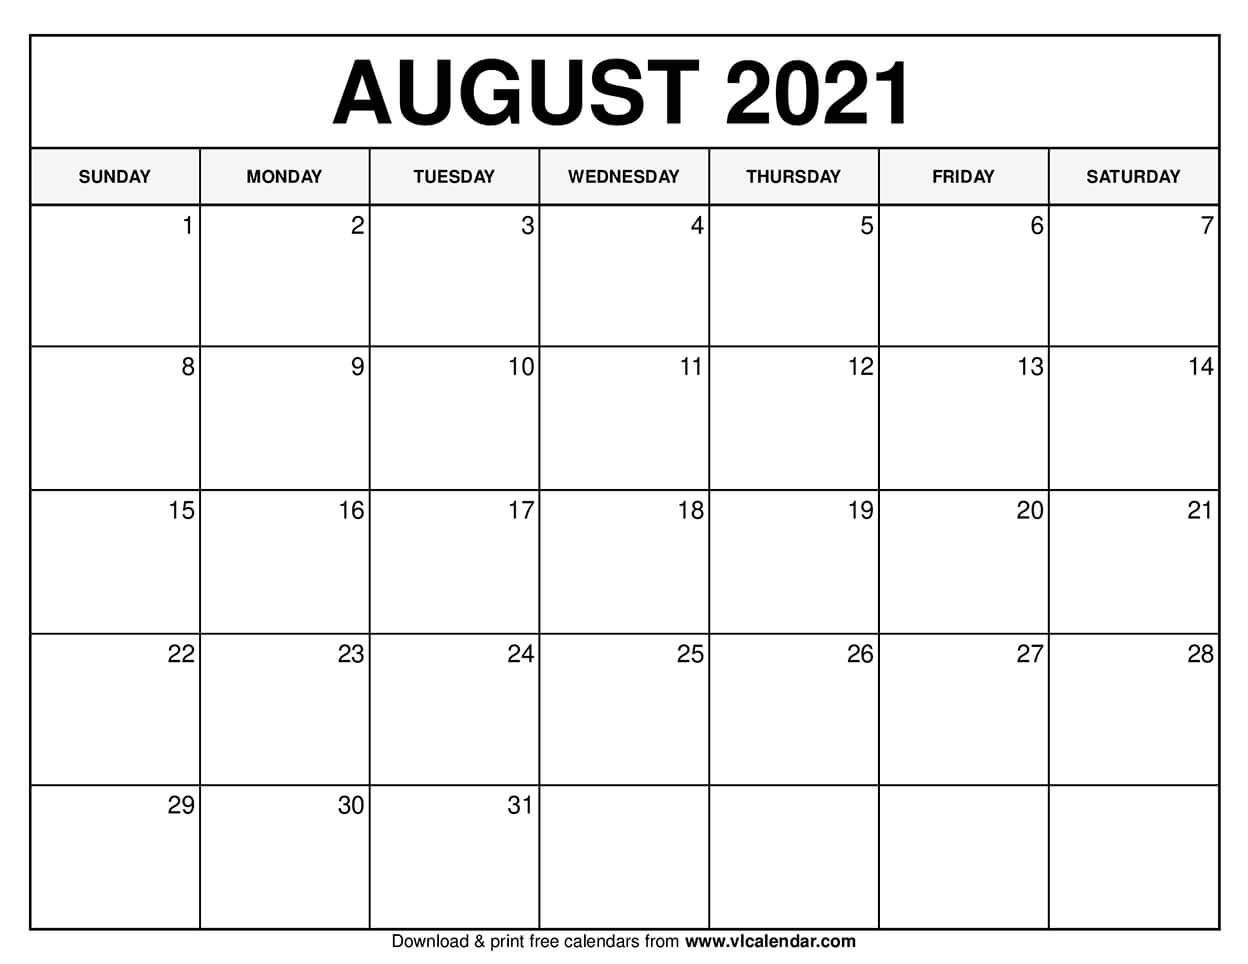 August Calendar 2021 | Best Calendar Example August 2021 Calendar Hindi